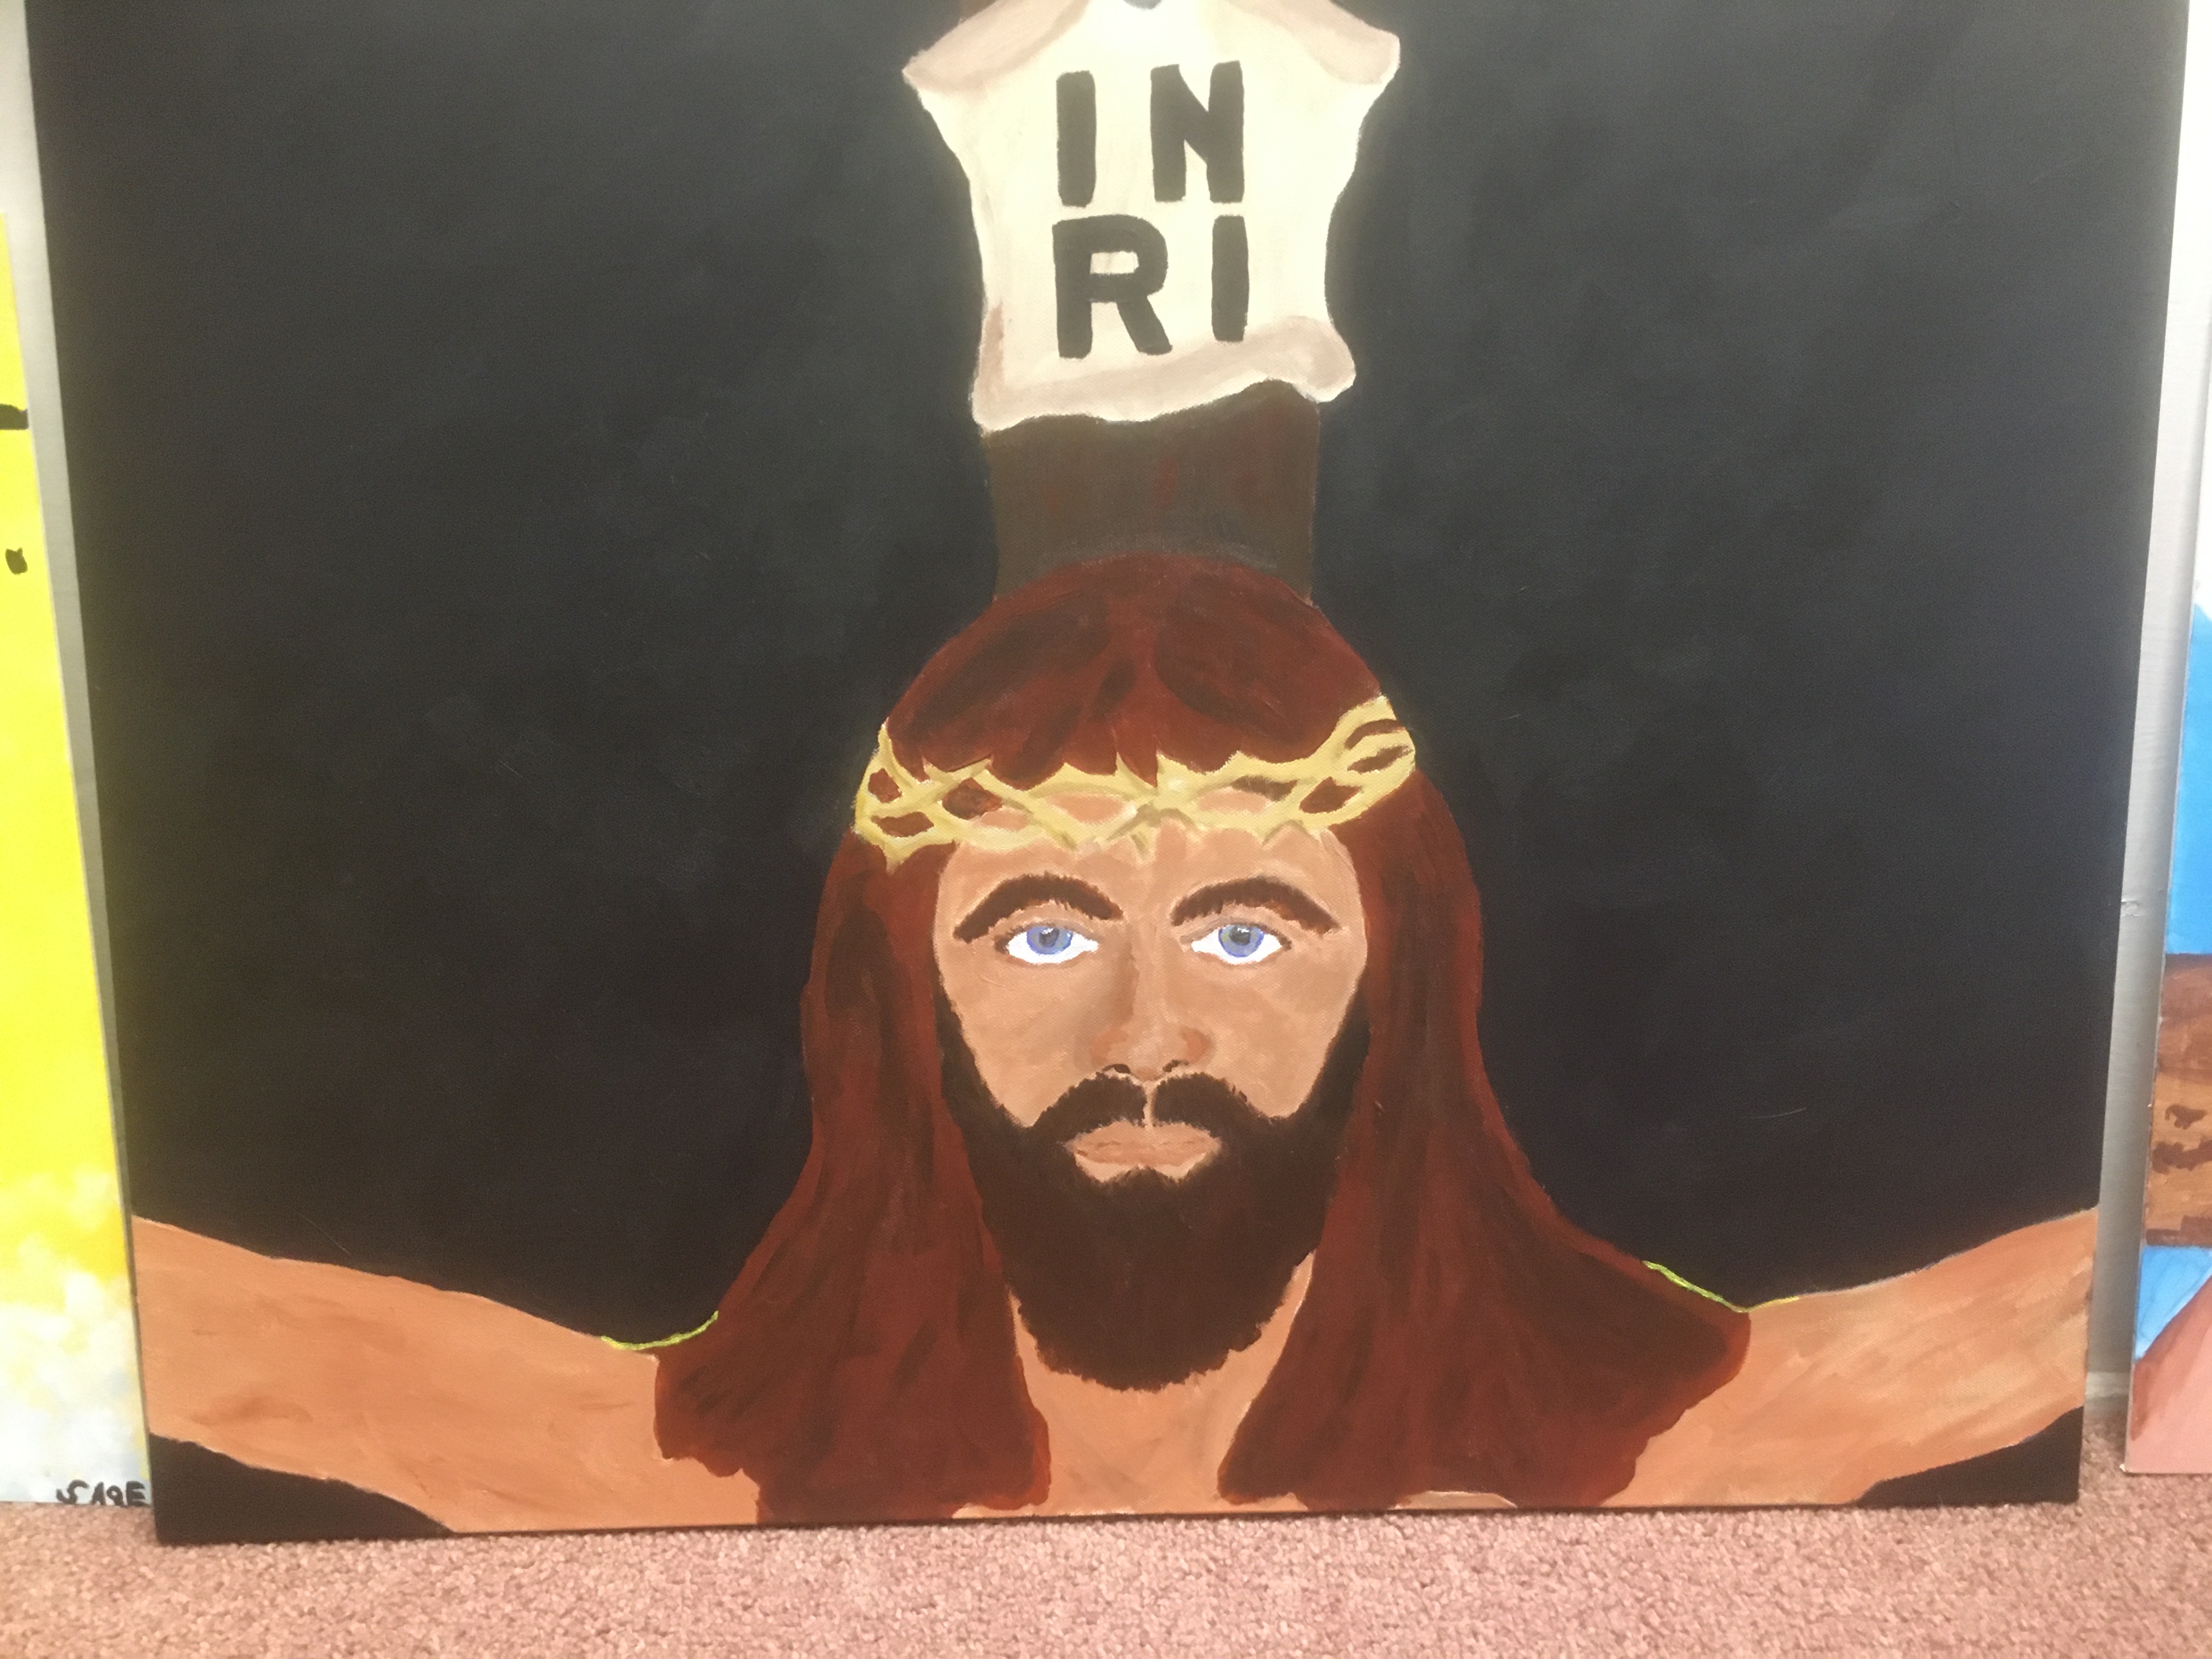 Jesus + plaque